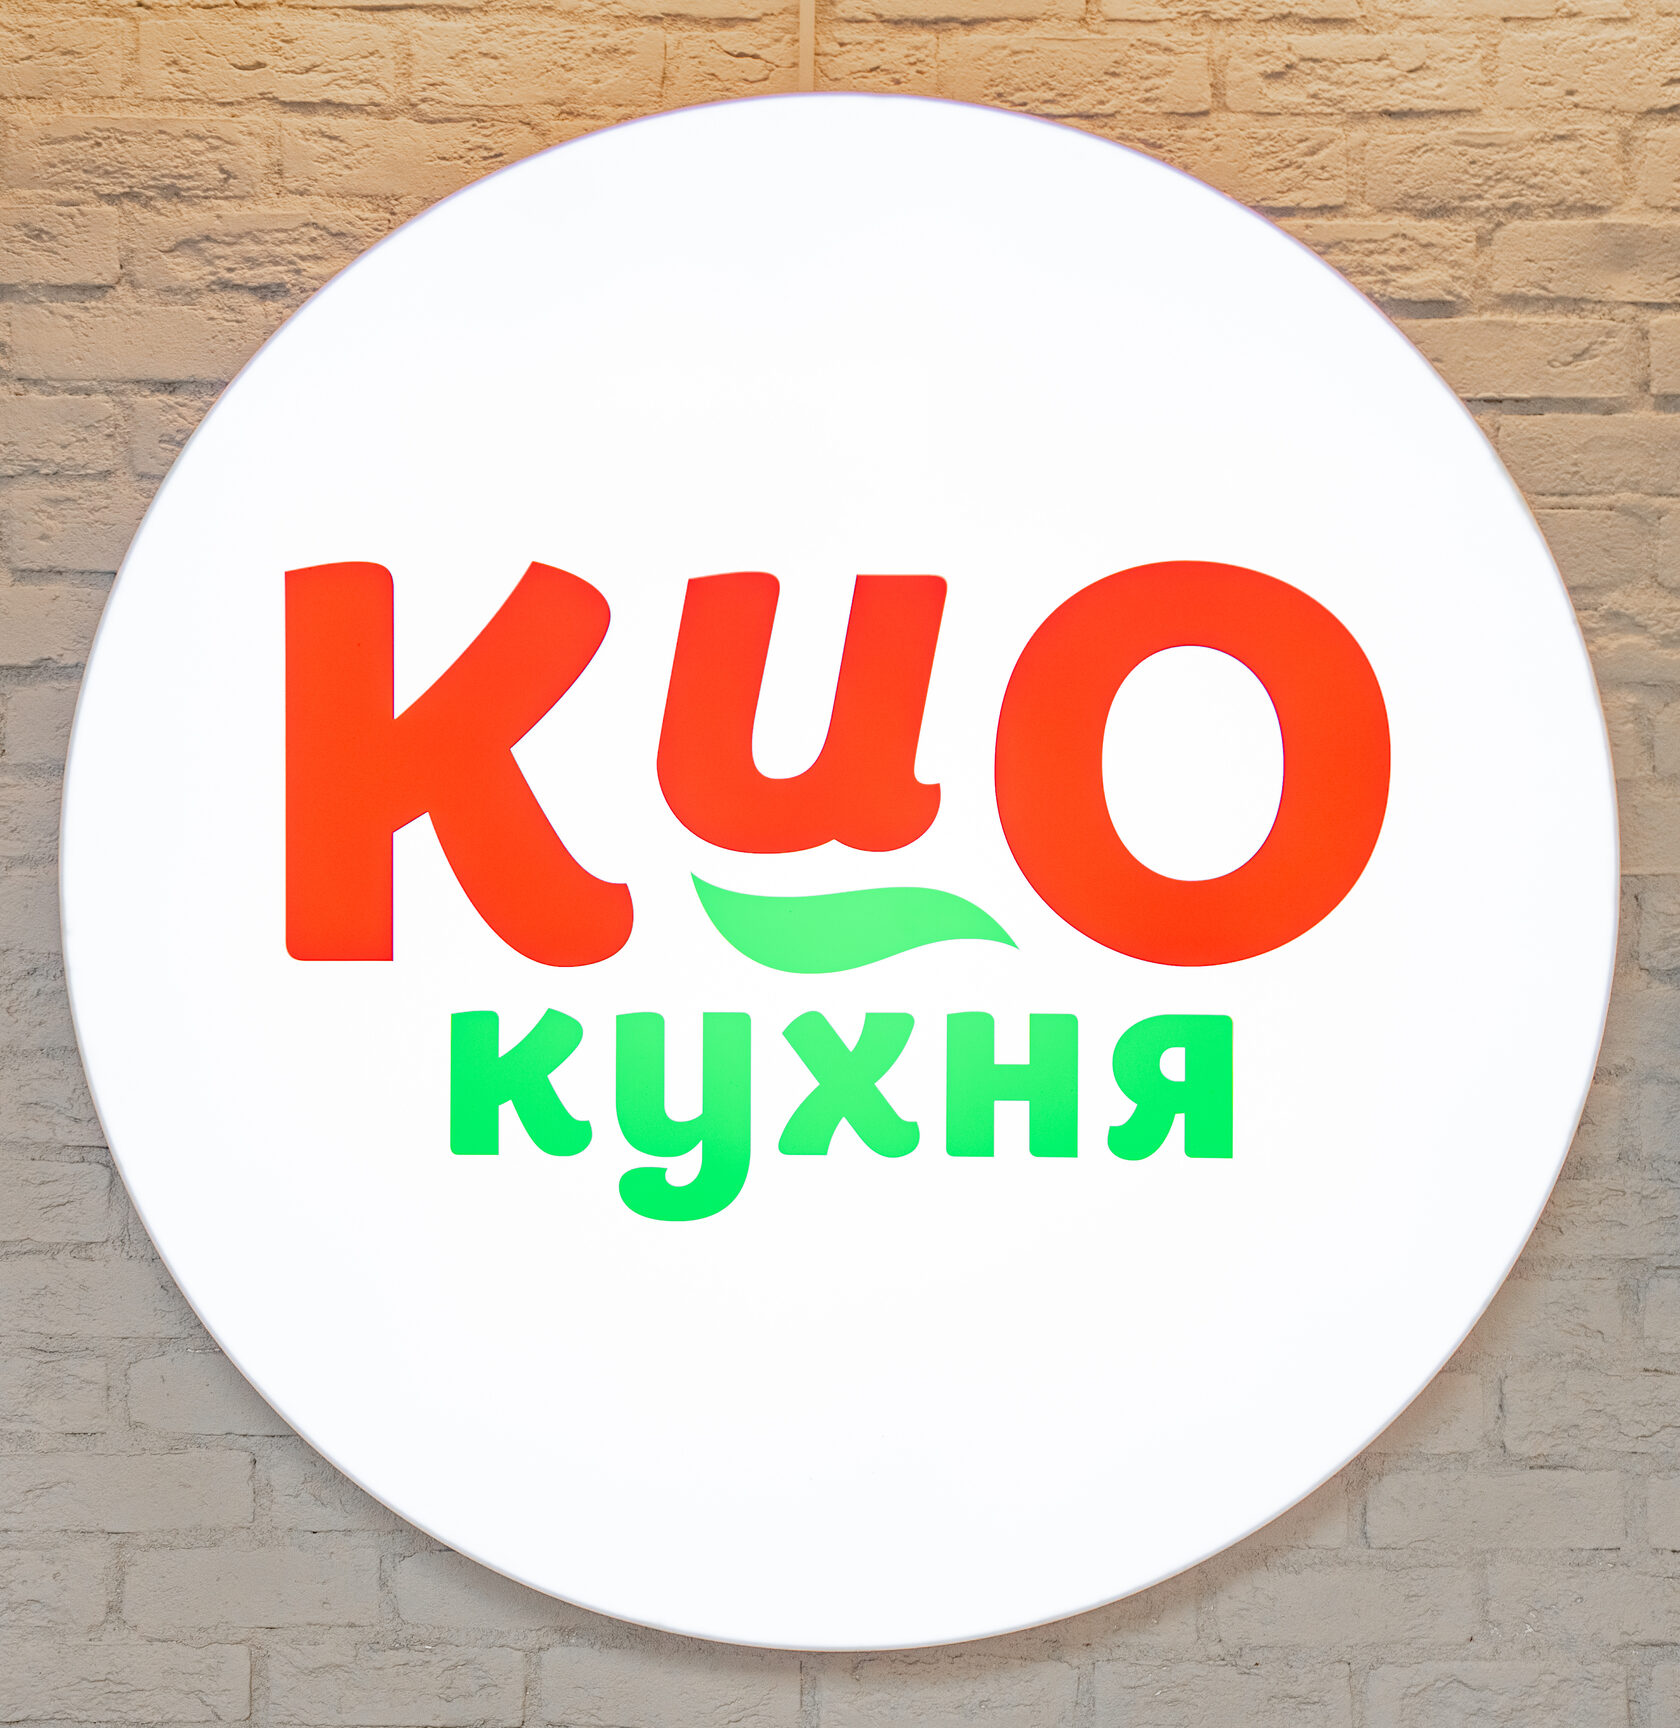 Kio spb. Кио кухня СПБ. Кио кухня ассортимент. Кио кухня реклама. Кио кухня приложение СПБ.